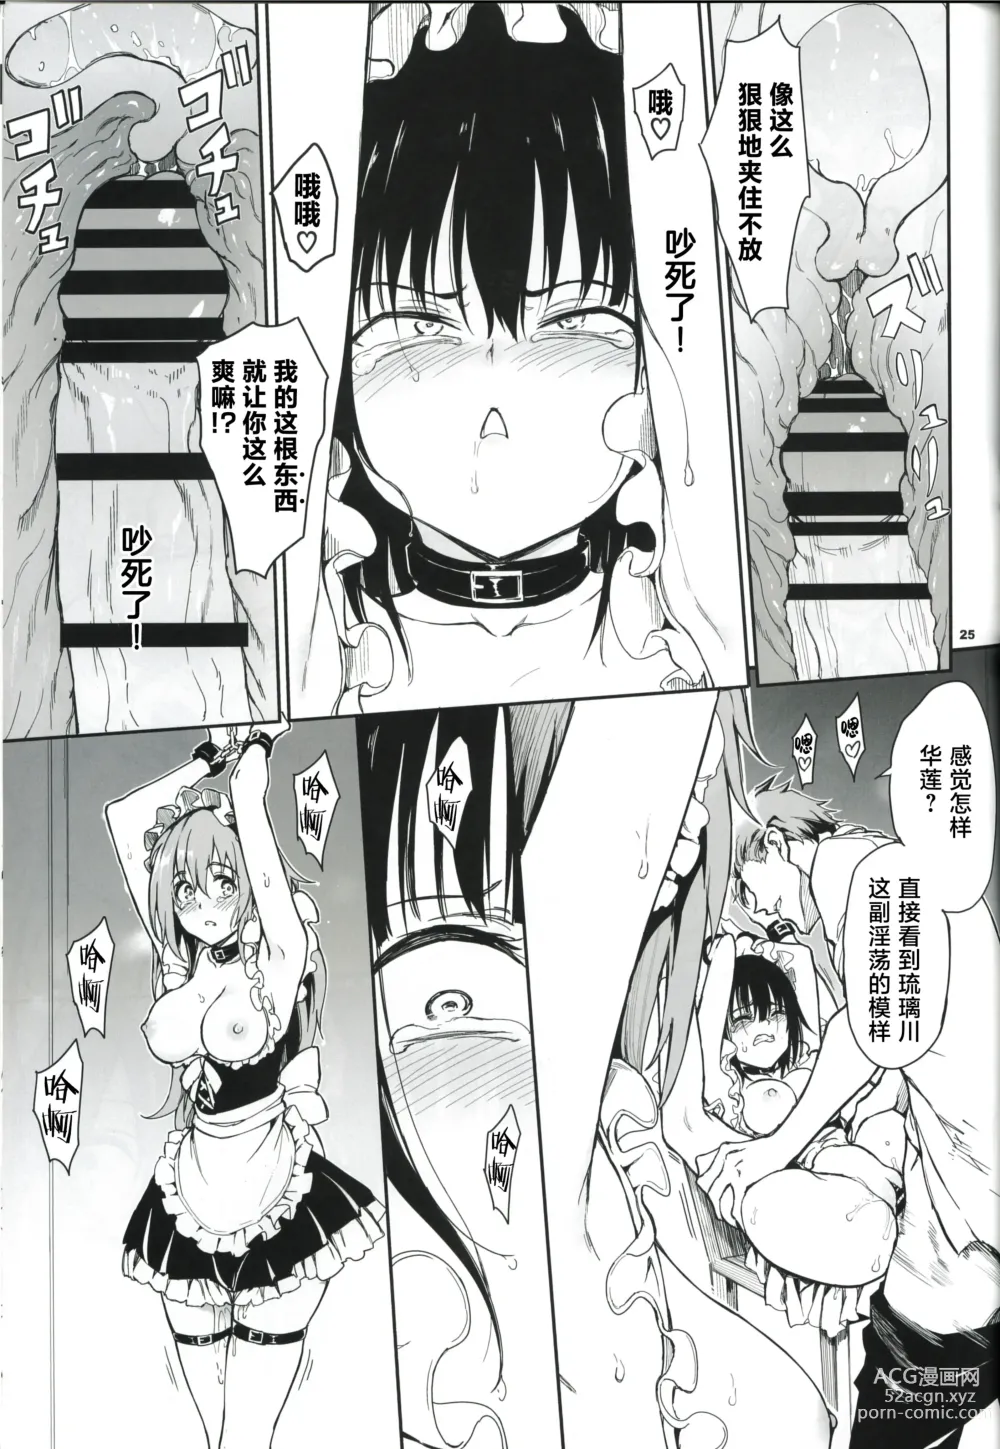 Page 150 of doujinshi Maid Kyouiku 1-6